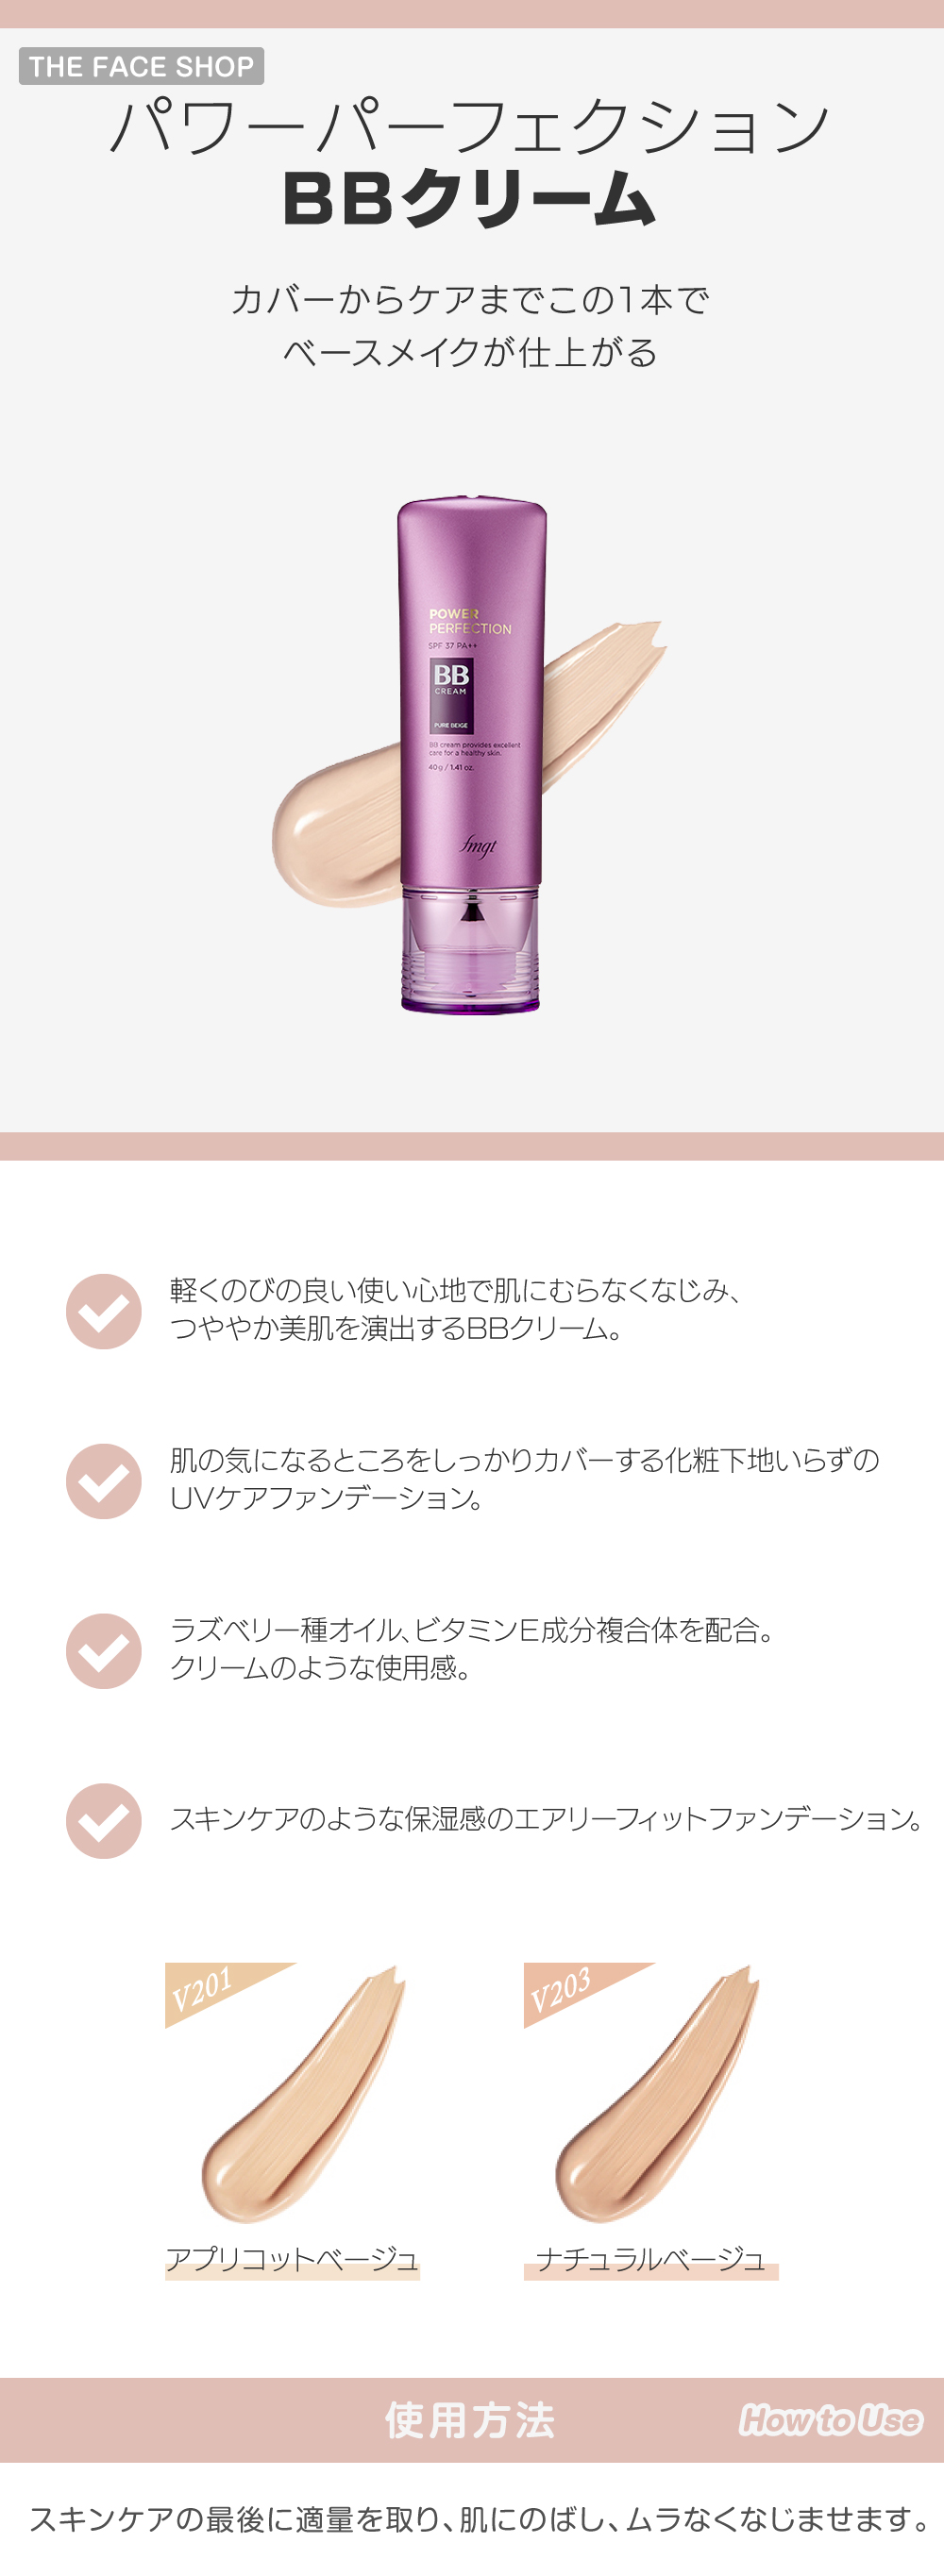 パワーパーフェクションBBクリーム skin holic 日本公式 オンラインショップ